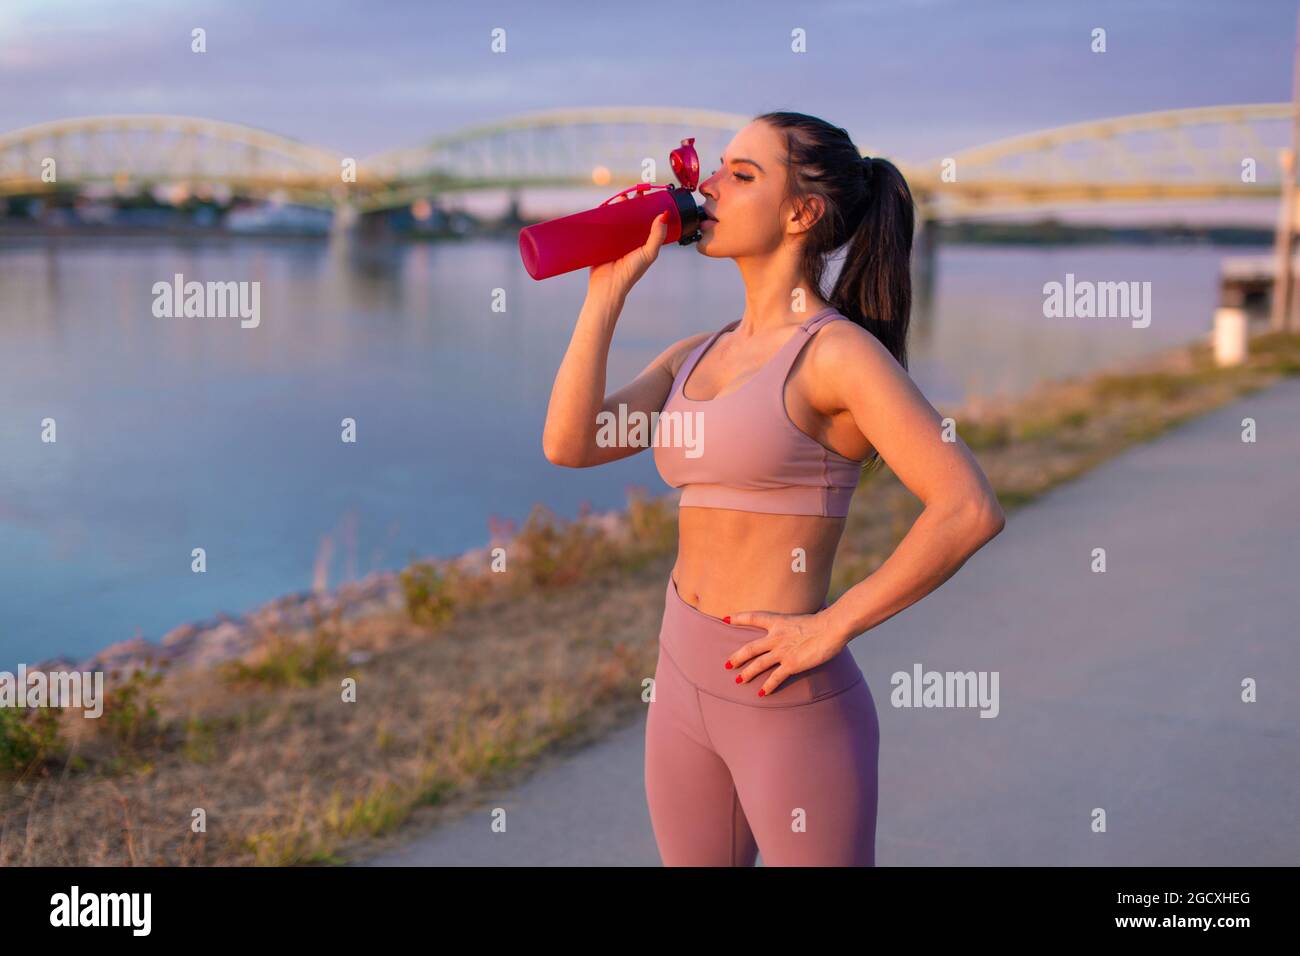 Durstige junge Frau in Sportkleidung, die am Flussufer Erfrischung aus der Flasche trinkt Stockfoto